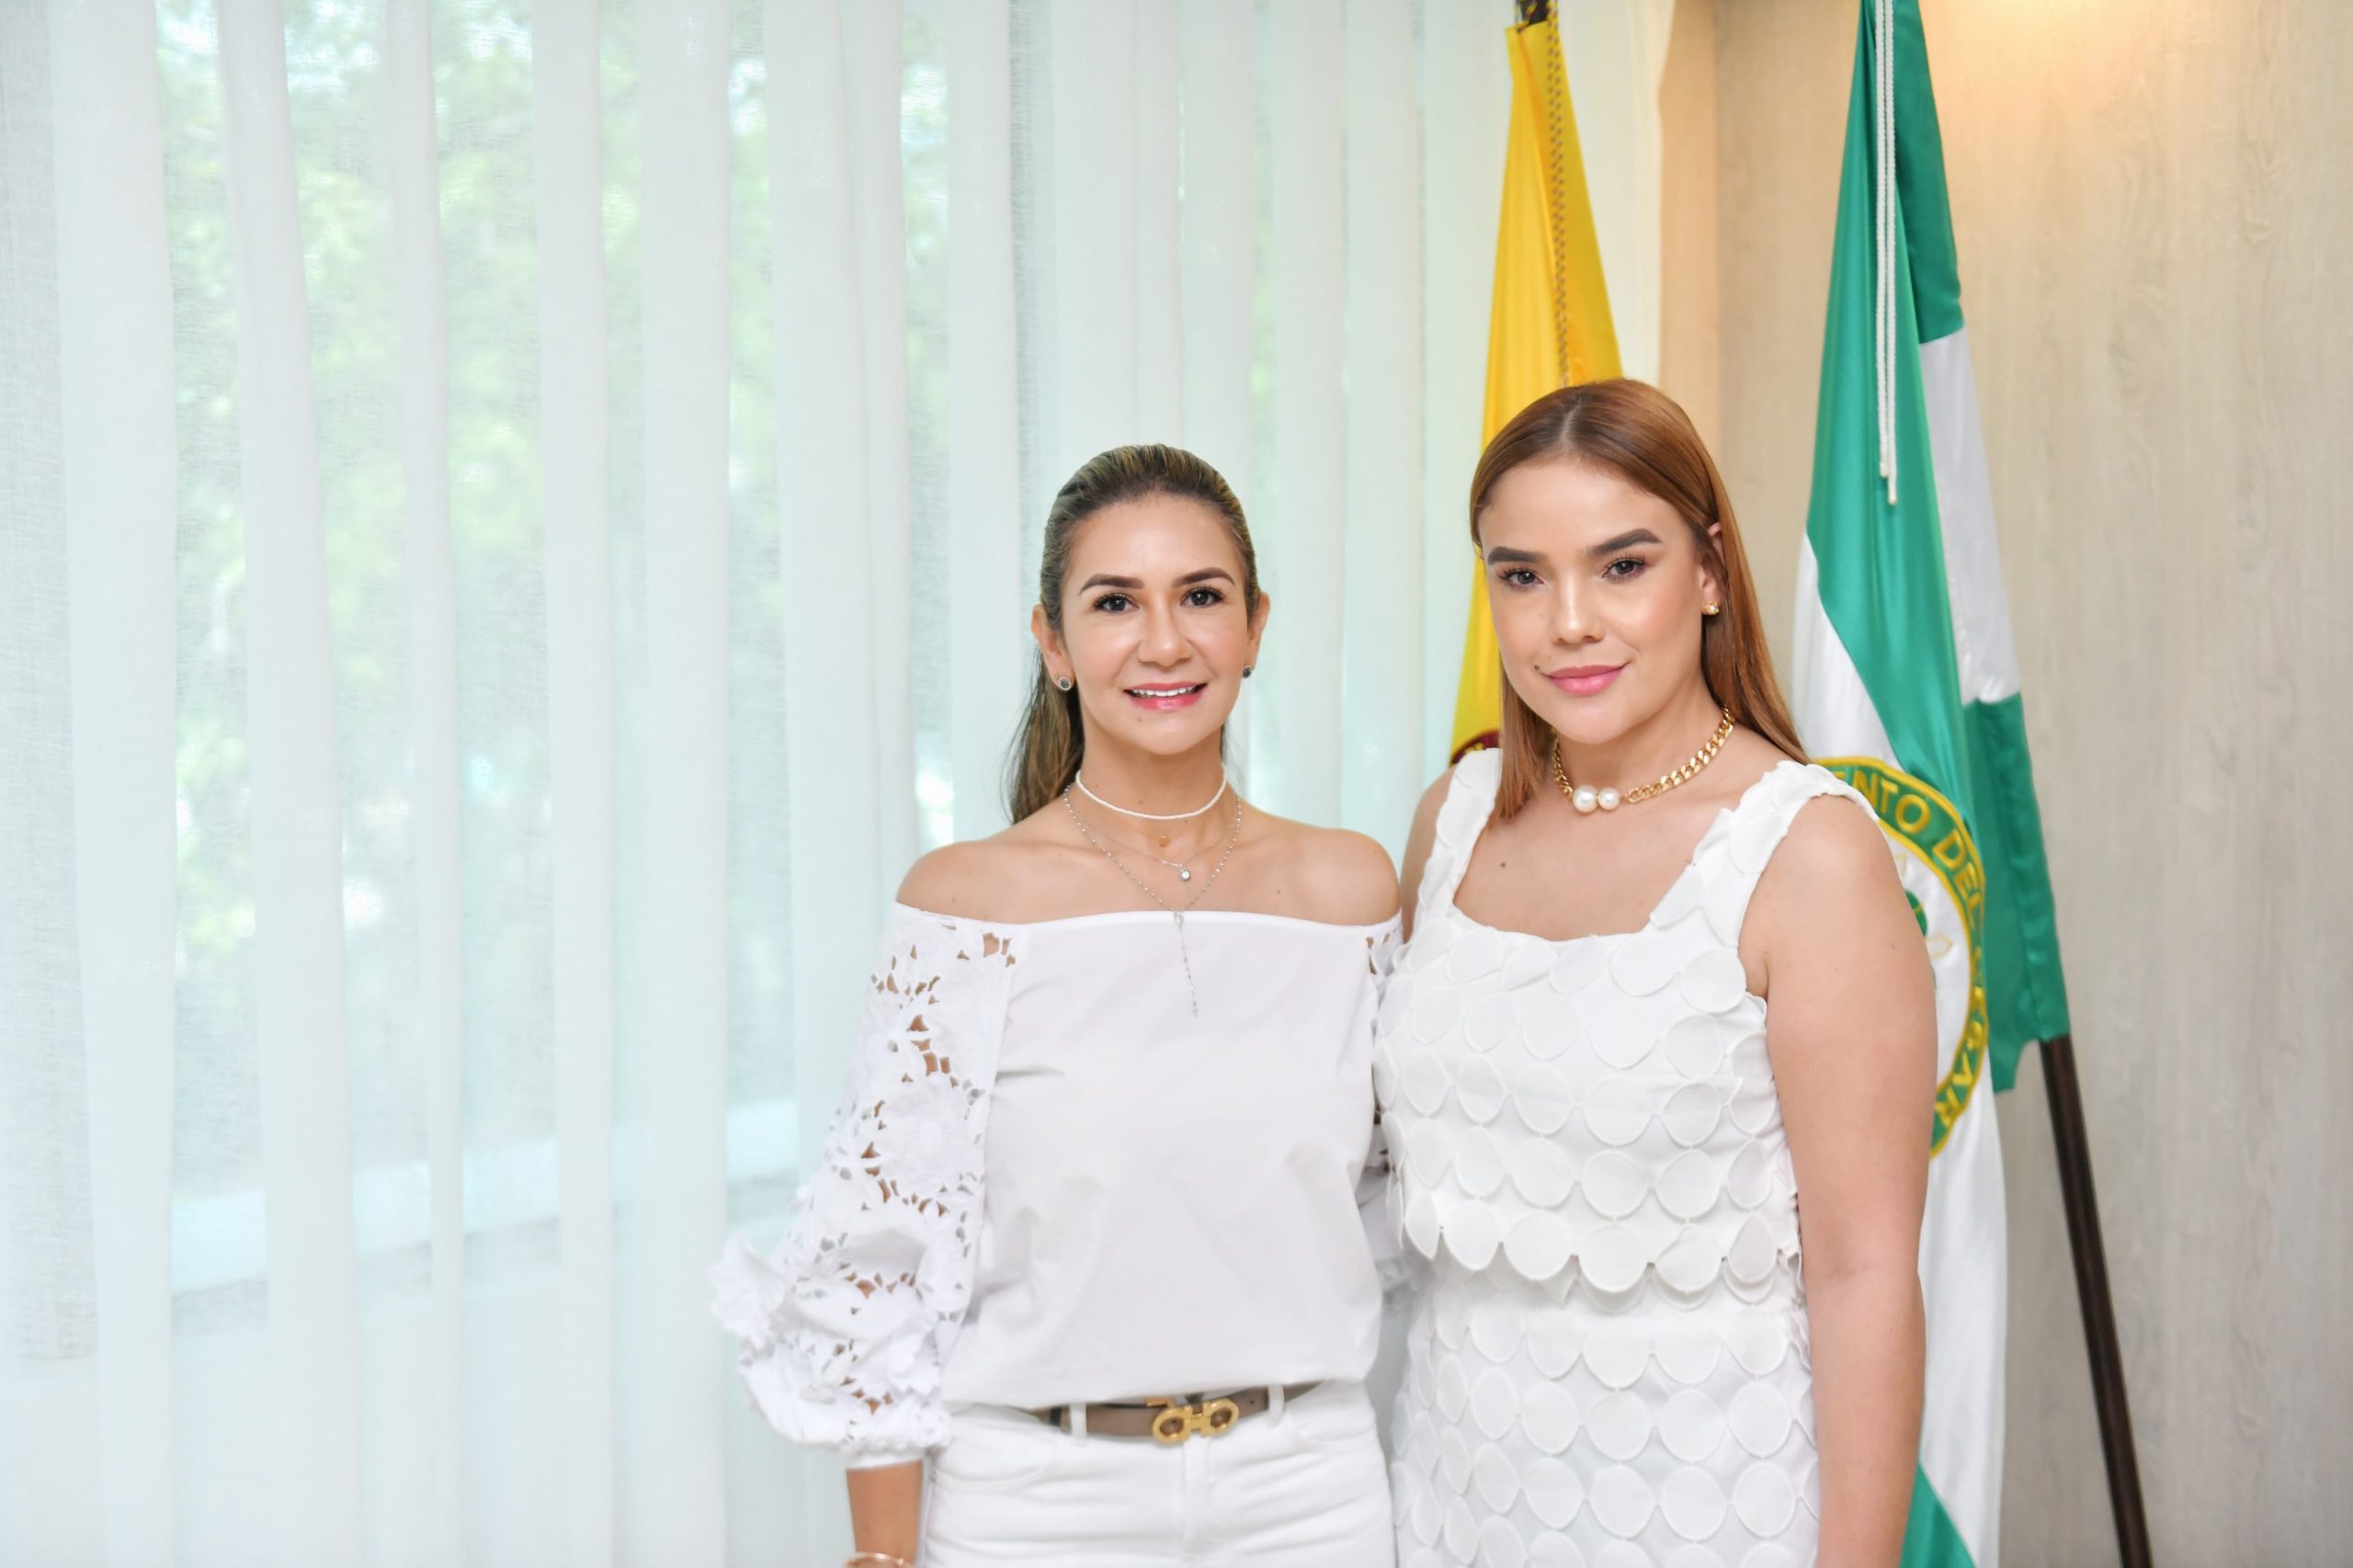 Gobernadora Elvia Milena Sanjuán posesionó a la nueva secretaria de Deportes del Cesar, Rayssa Milena Rincón